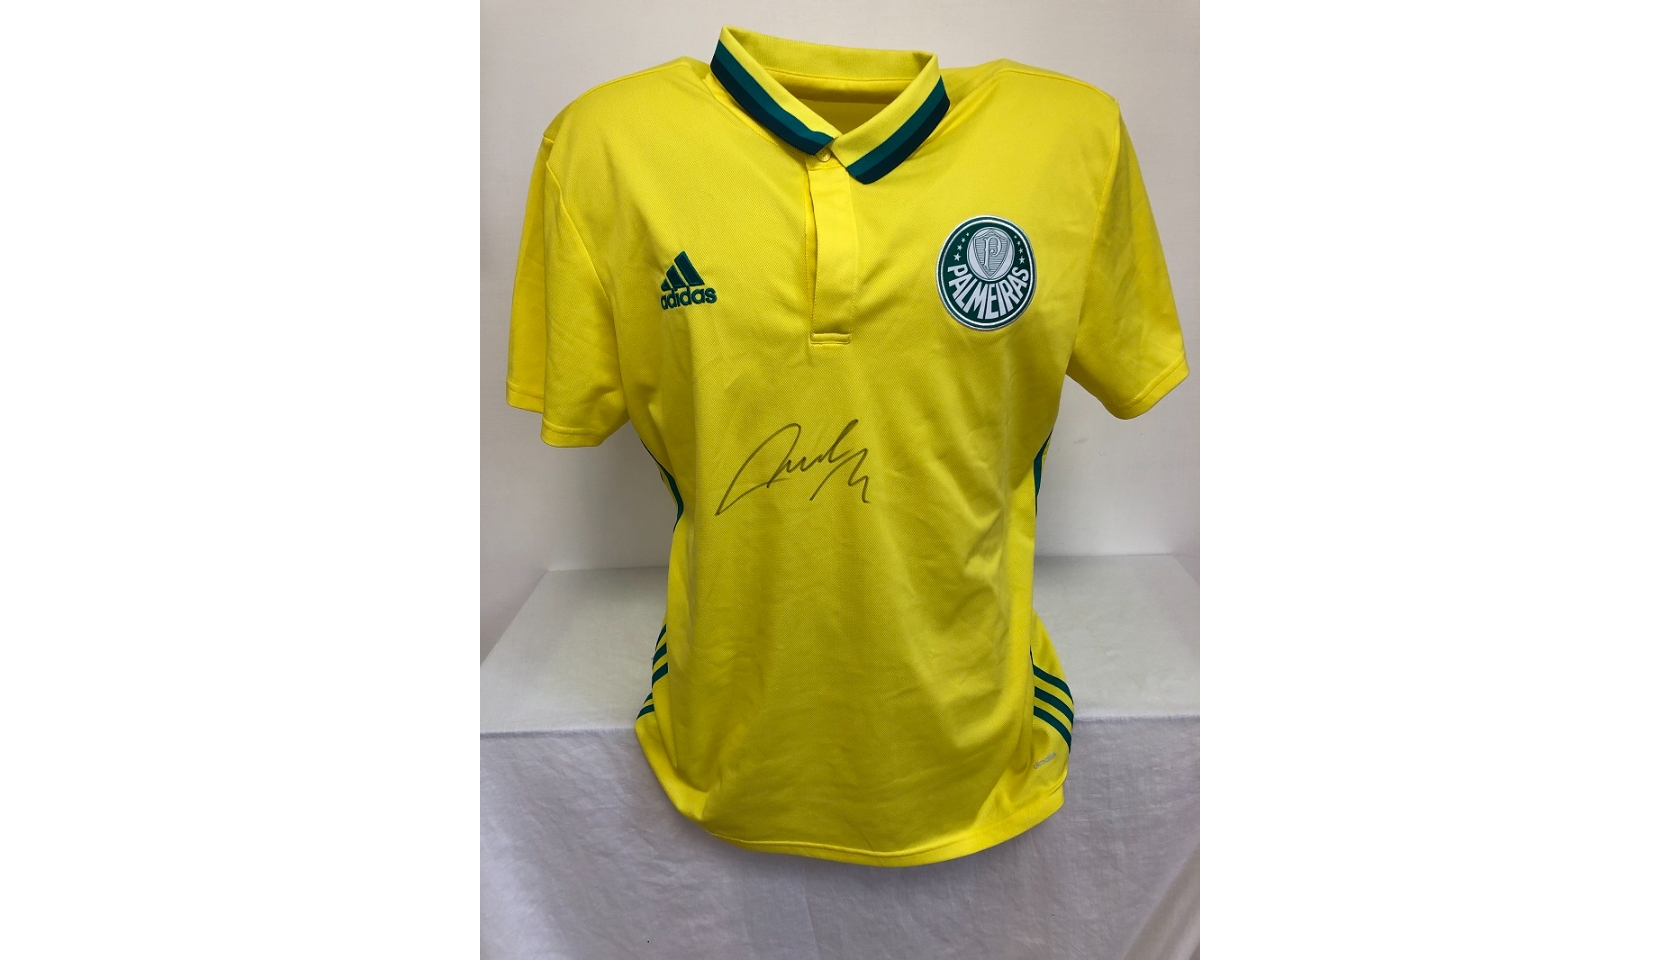 Official Palmeiras Polo Shirt - Signed by Roberto Carlos